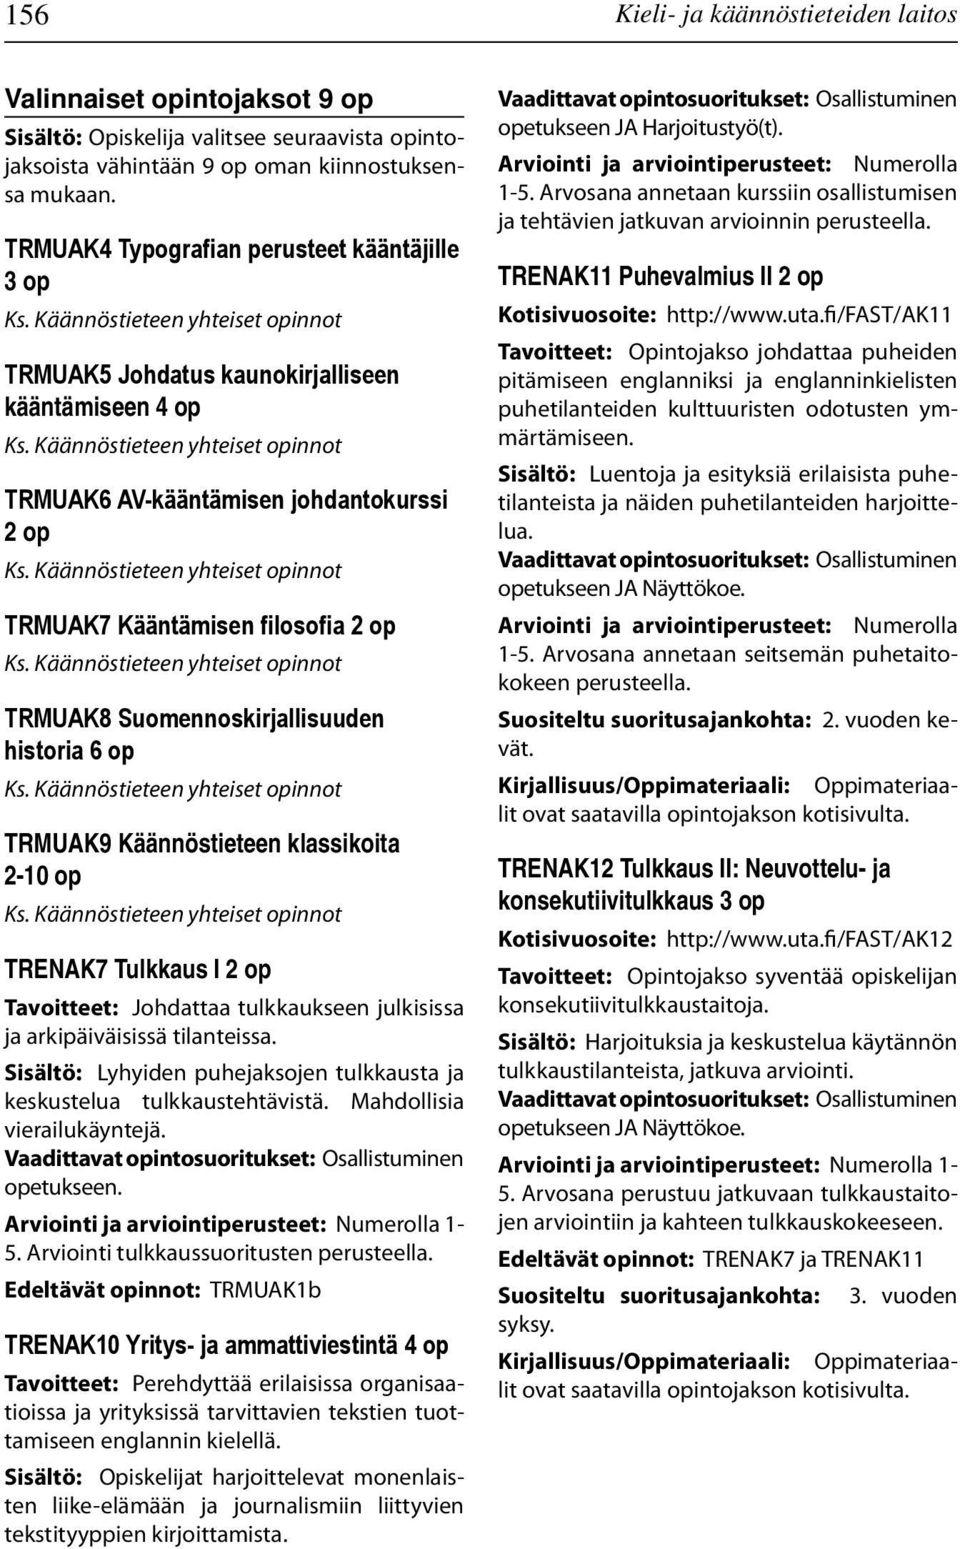 Suomennoskirjallisuuden historia 6 op TRMUAK9 Käännöstieteen klassikoita 2-10 op TRENAK7 Tulkkaus I 2 op Tavoitteet: Johdattaa tulkkaukseen julkisissa ja arkipäiväisissä tilanteissa.